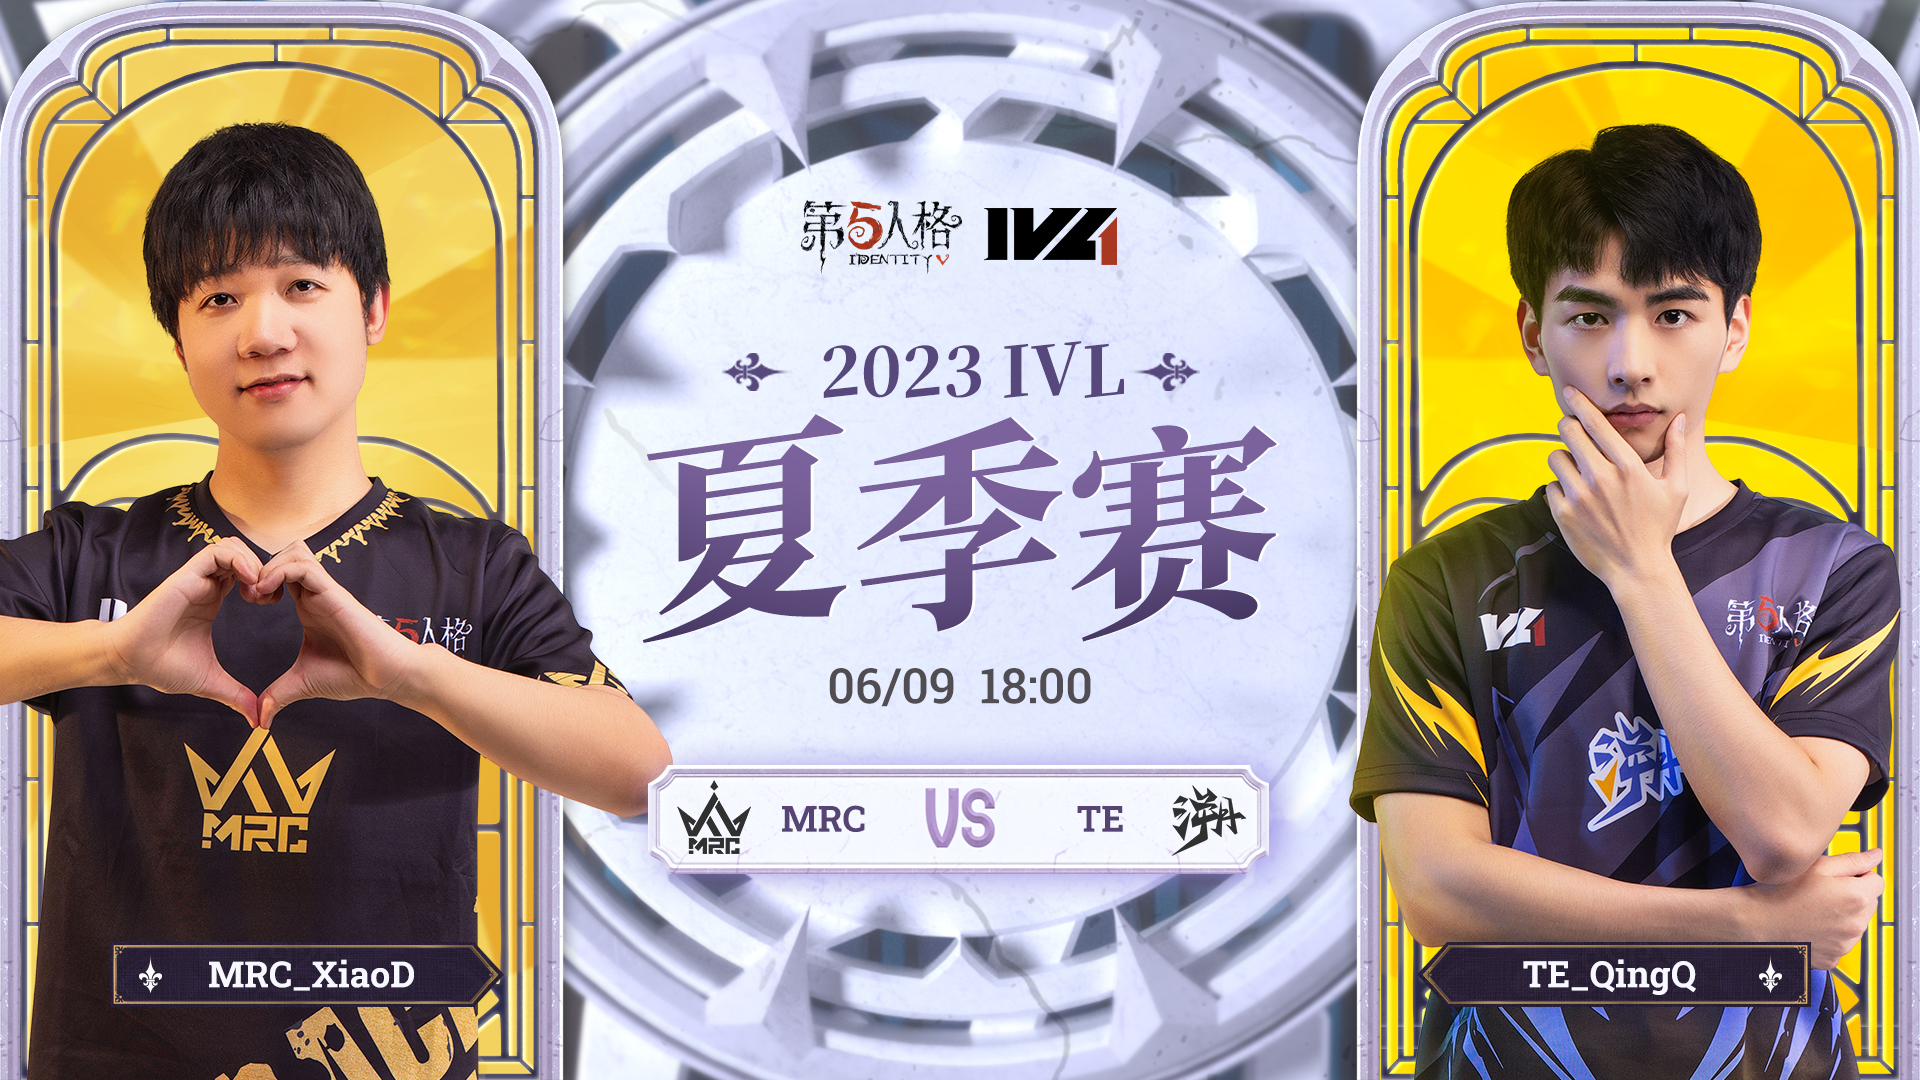 【2023IVL】夏季赛W1D1录像 MRC vs TE